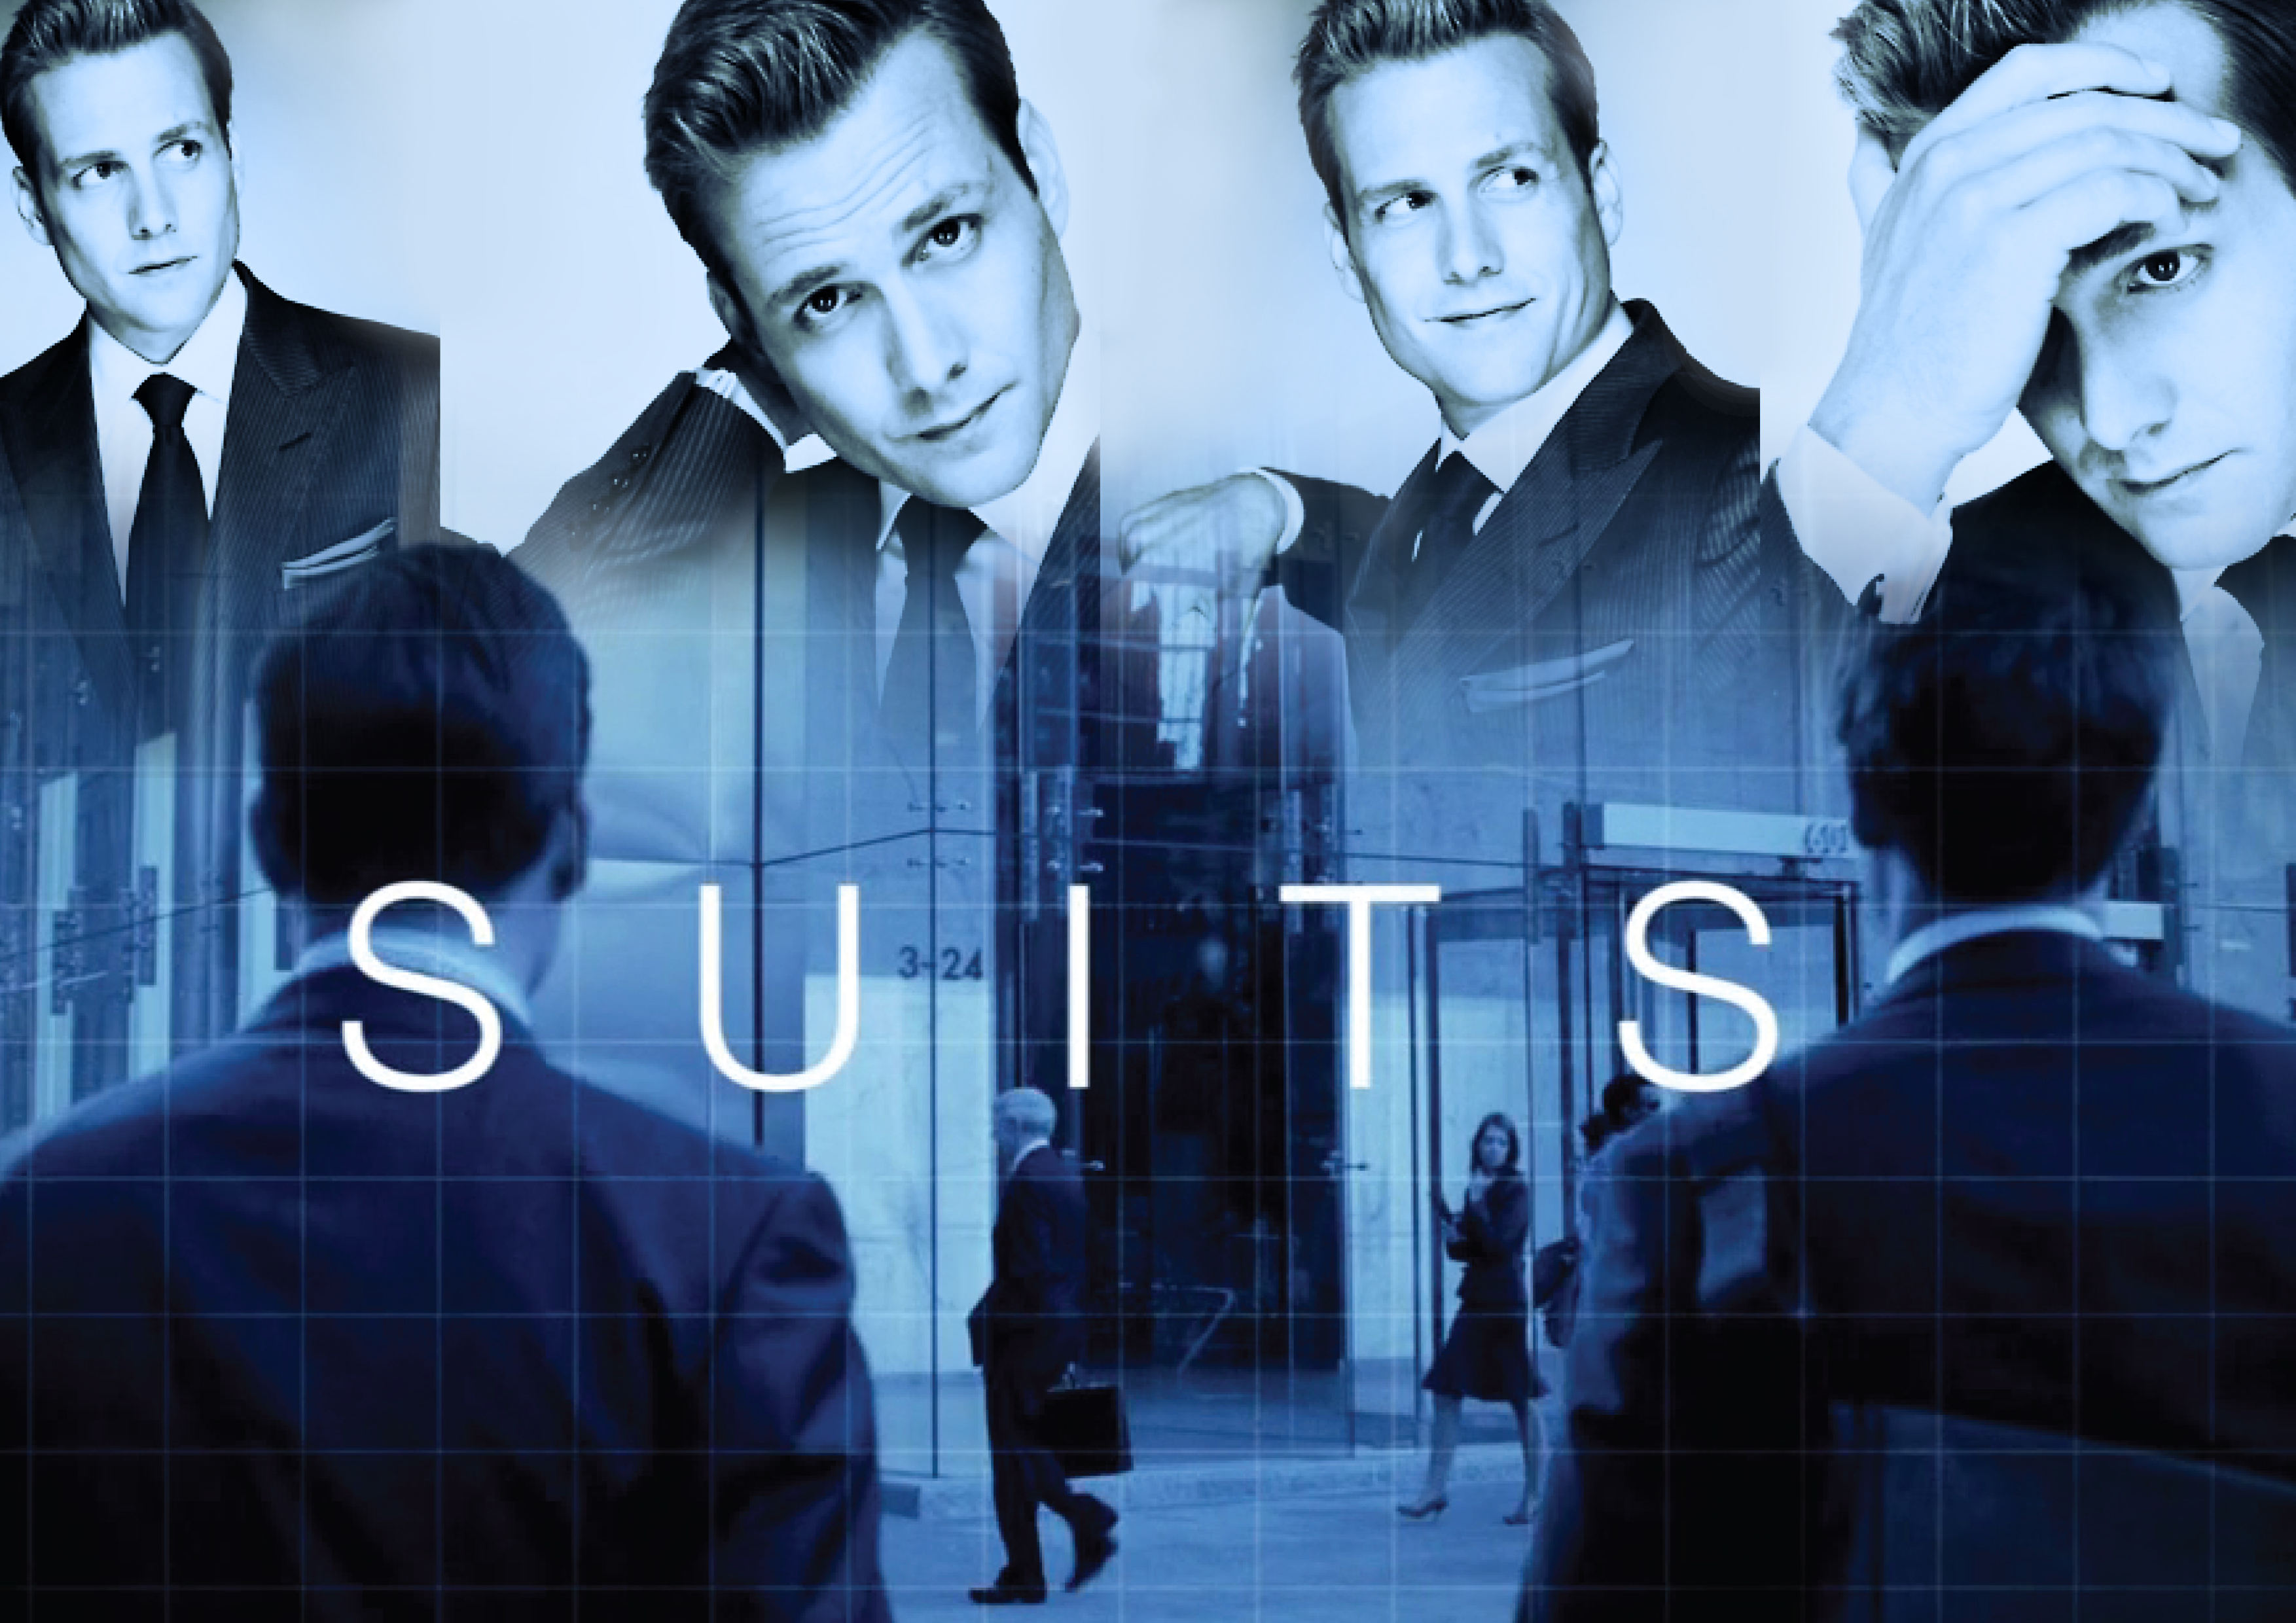 Suits Tv Show - 3508x2480 Wallpaper 